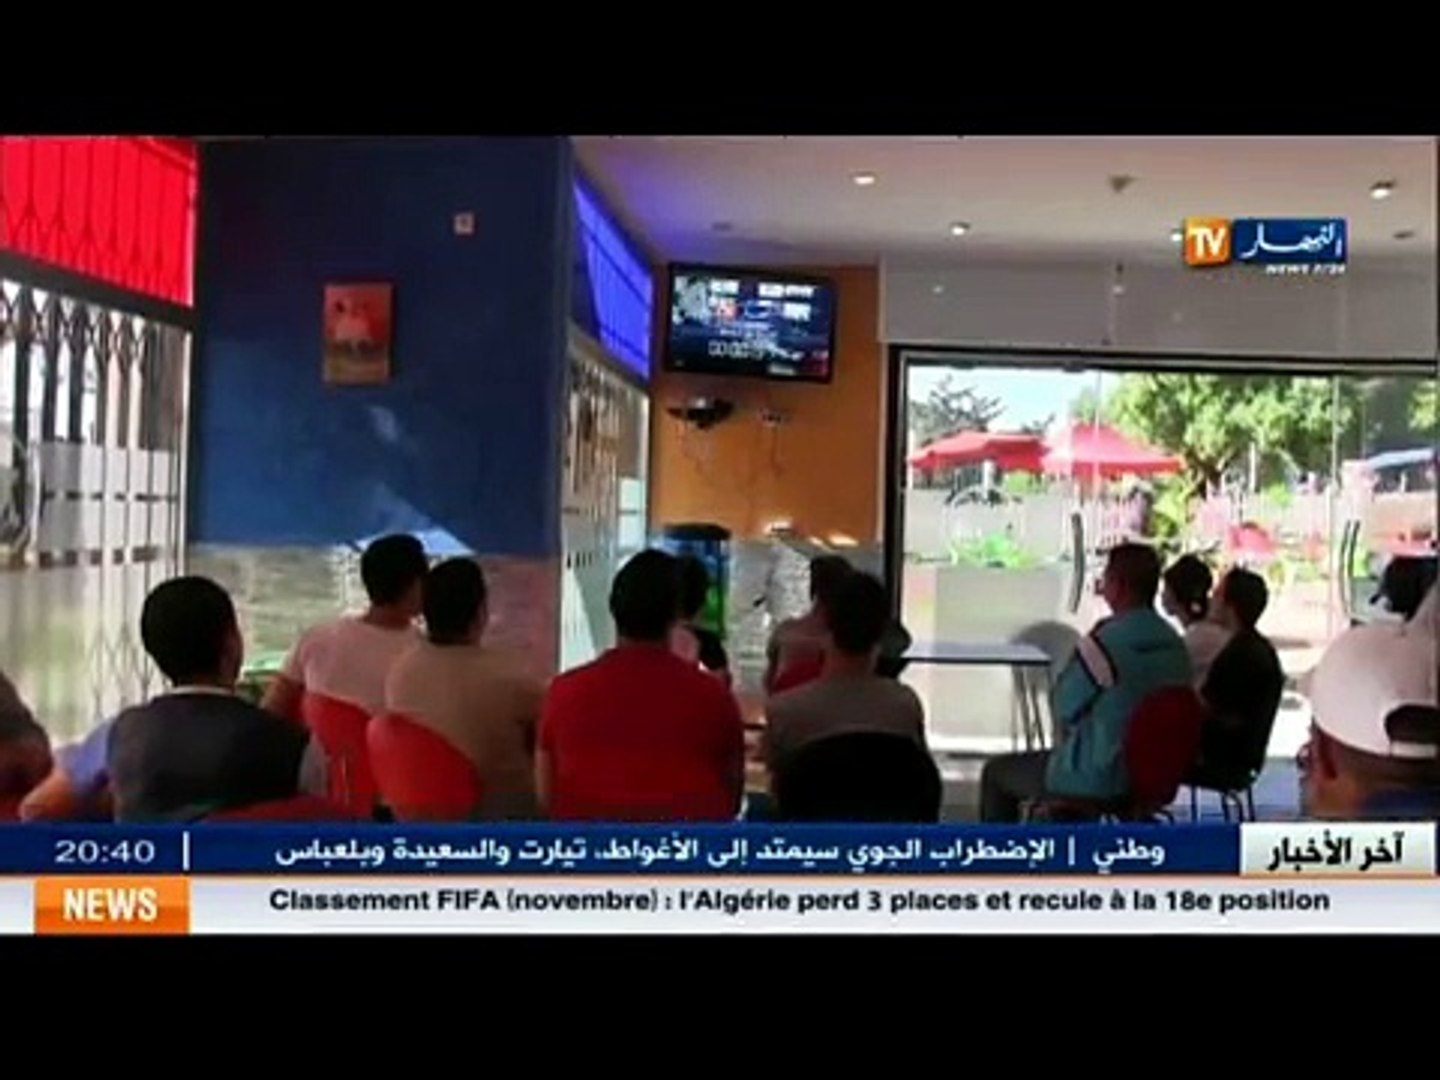 ⁣اعلام: النهار  تي  في  اول قناة اخبارية في الجزائر بـ 2 مليون مشاهد يوميا